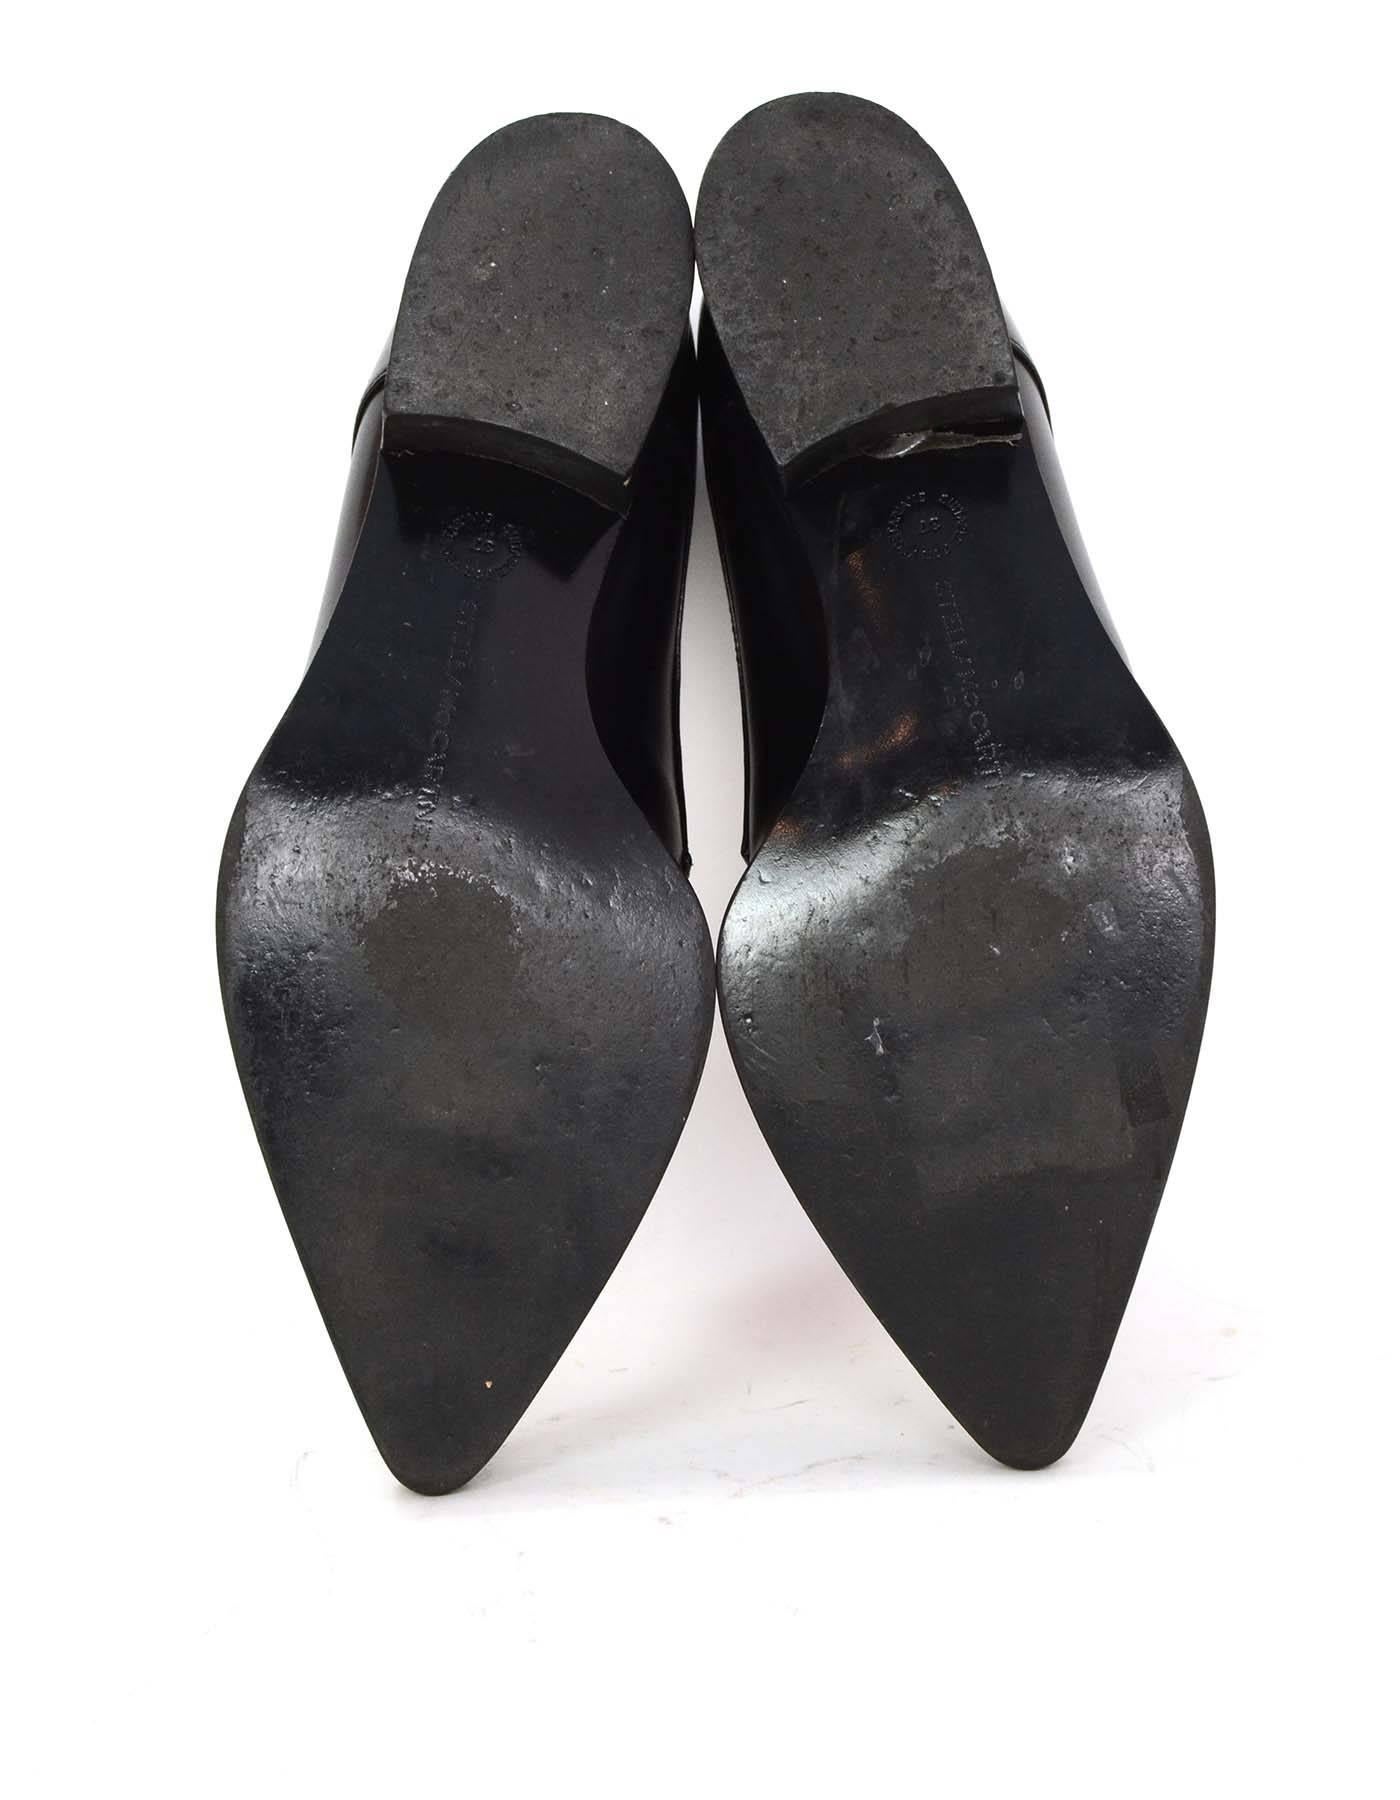 Stella McCartney Black Pointed Toe Tuxedo Shoes sz 37 3